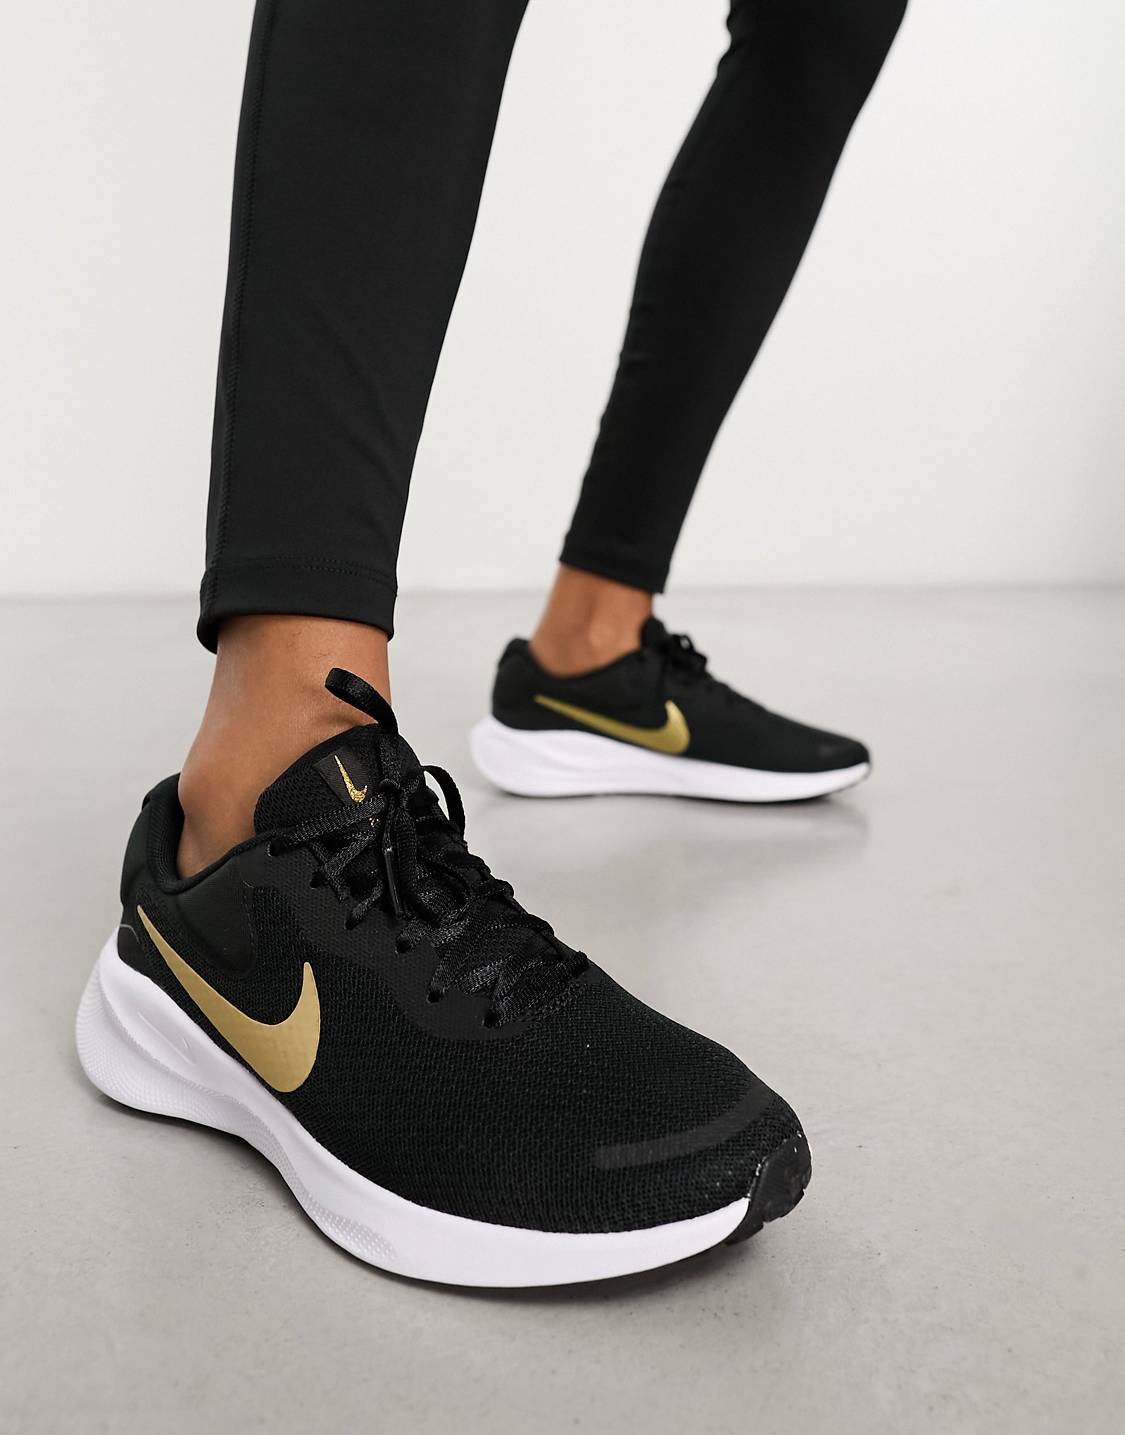 נעלי נייק ספורט נשים Nike Revolution